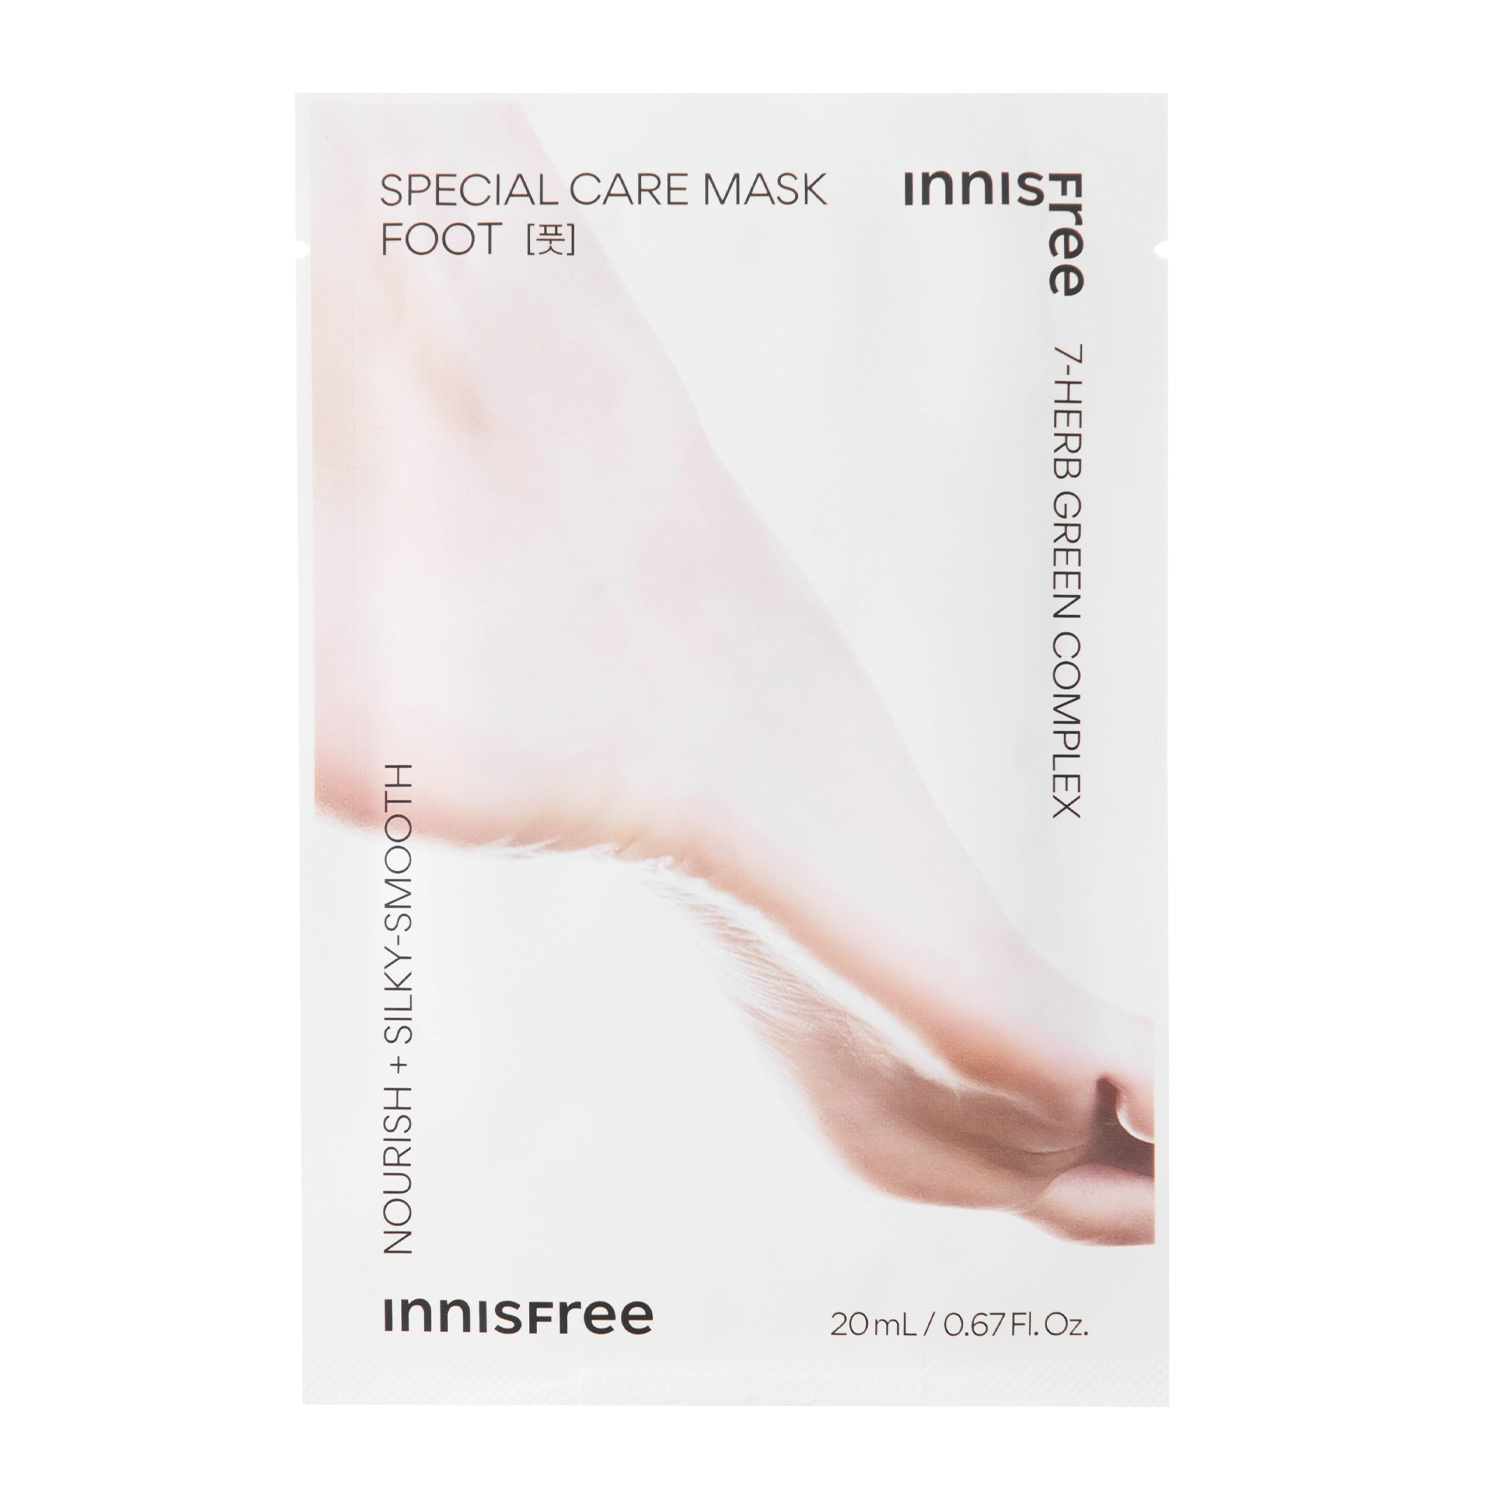 Innisfree - Special Care Foot Mask - Ošetrujúca maska na nohy s ureou - 20 ml